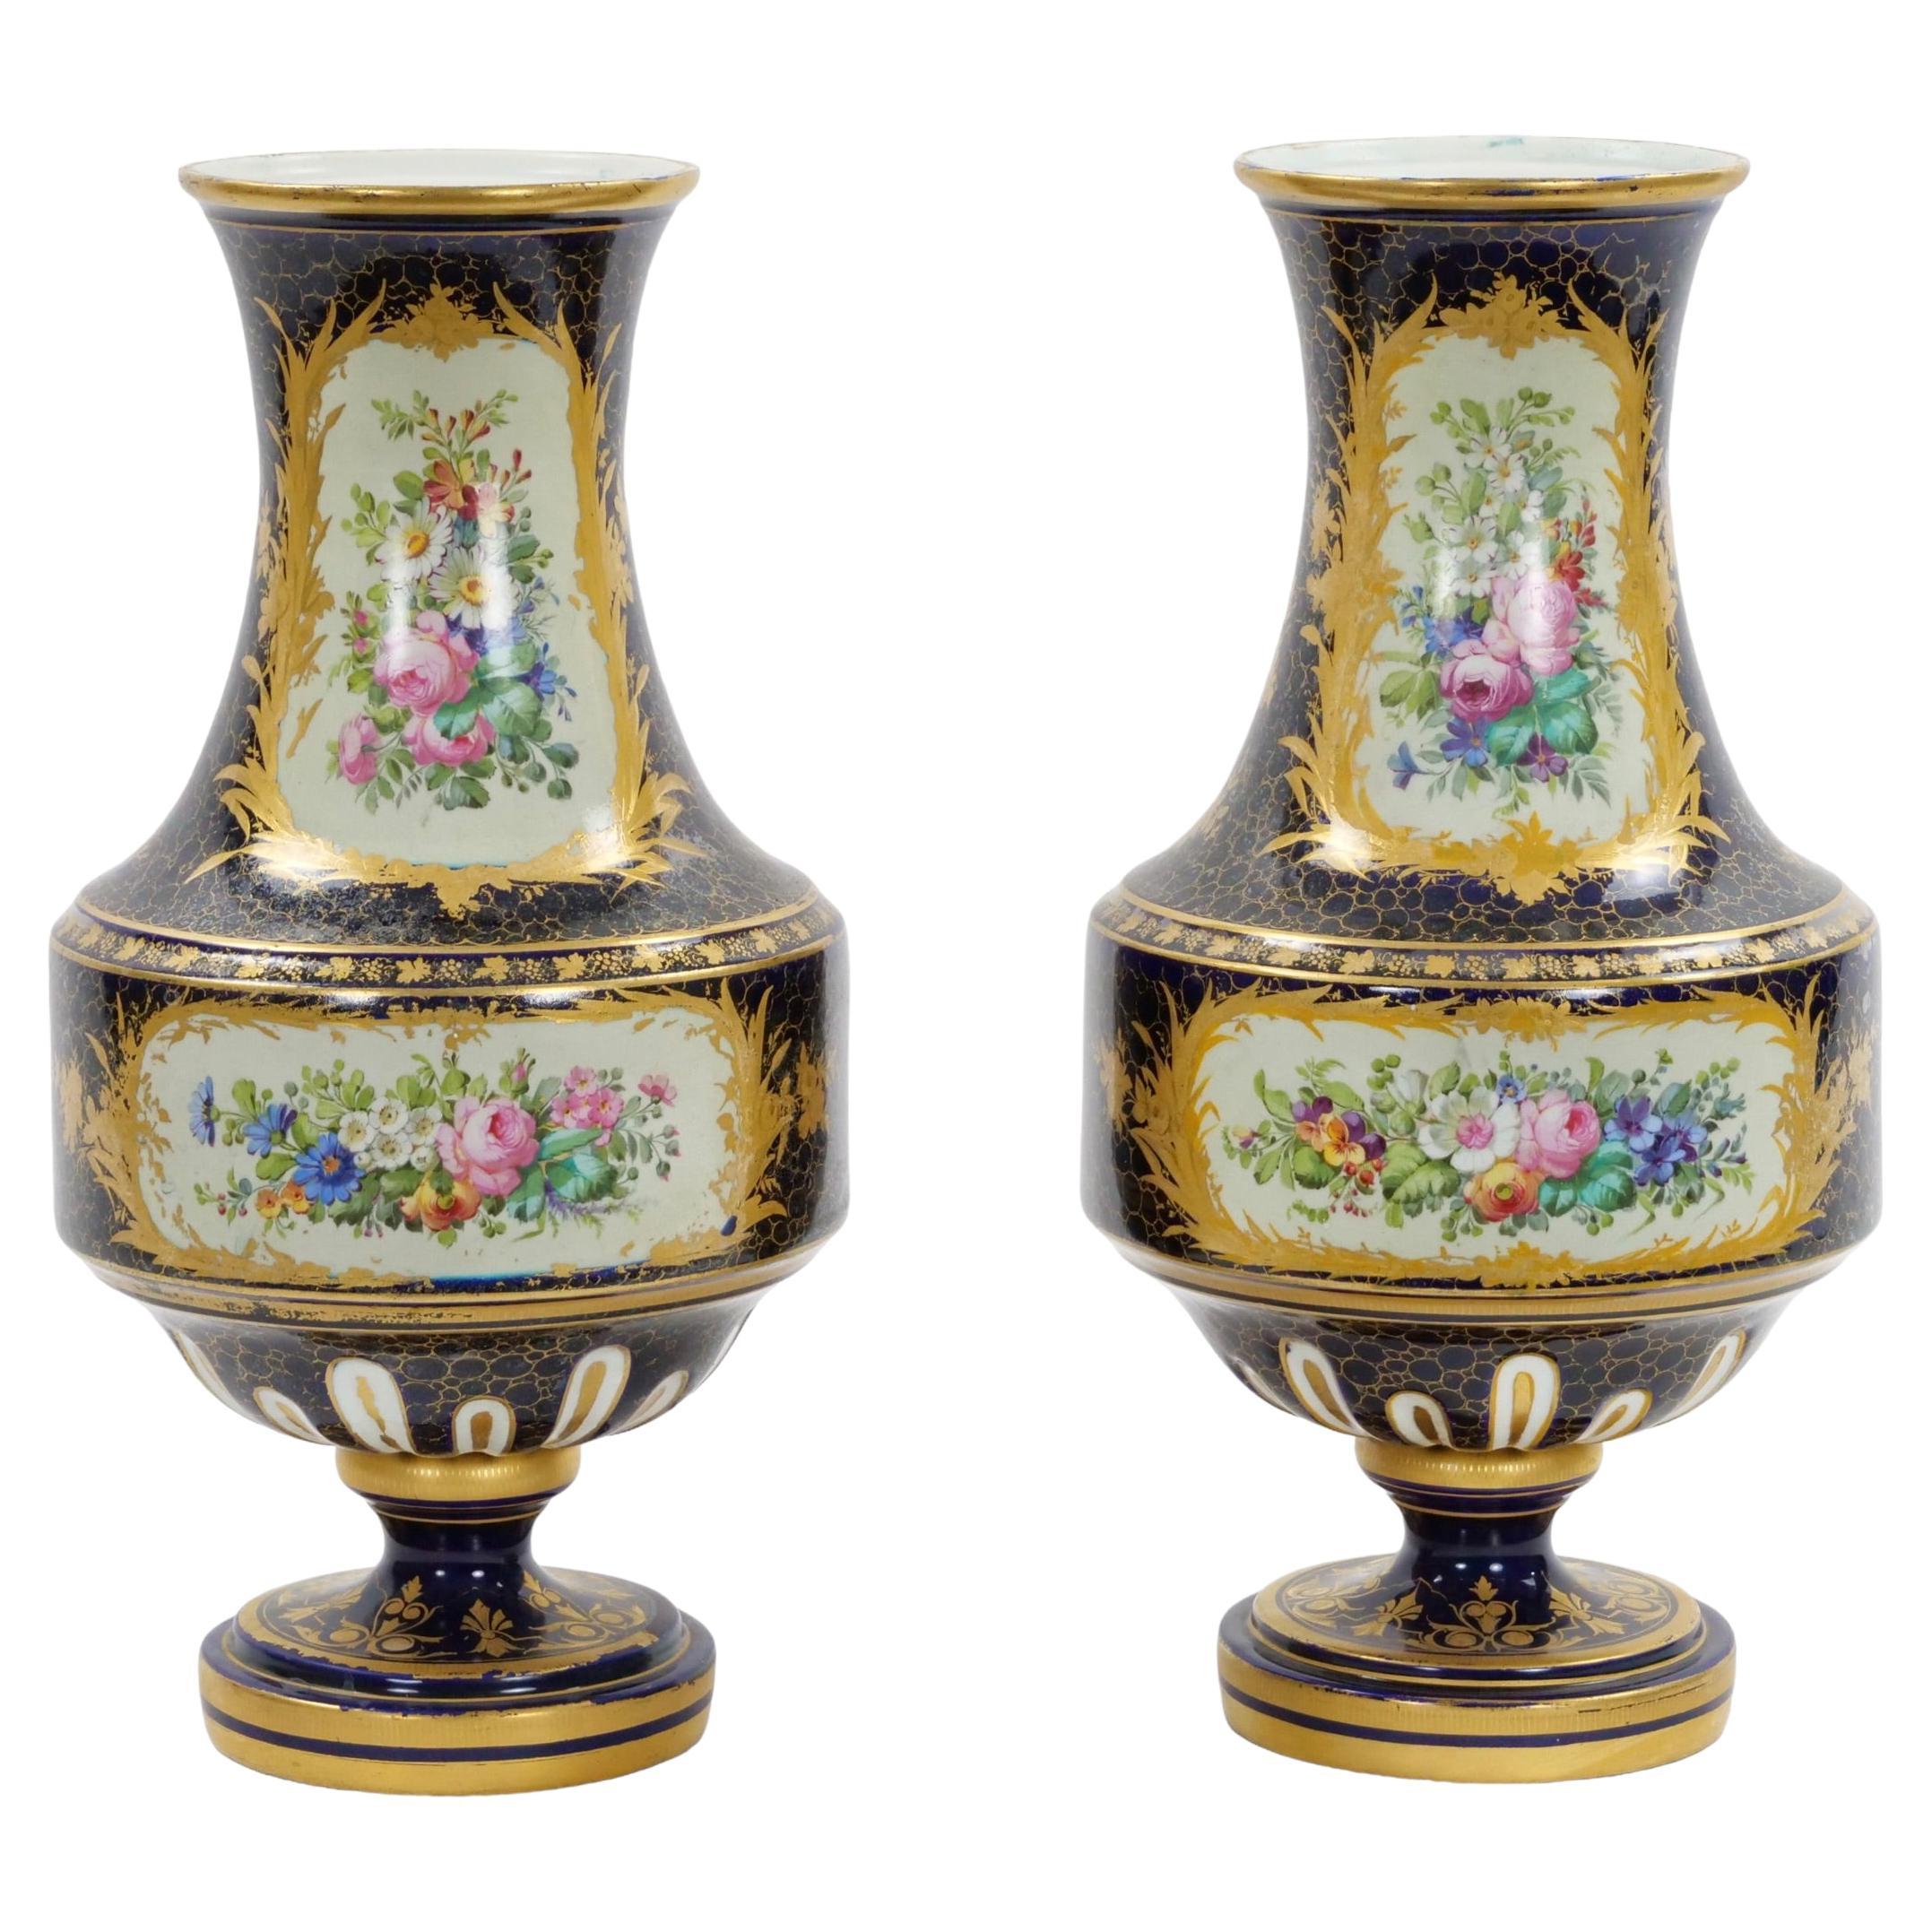 Plongez dans l'élégance du XIXe siècle avec cette exquise paire de vases en porcelaine de Sèvres peints à la main. Reflétant l'opulence du style Louis XV, ces vases ne sont pas seulement des pièces décoratives mais aussi des fenêtres sur un monde de